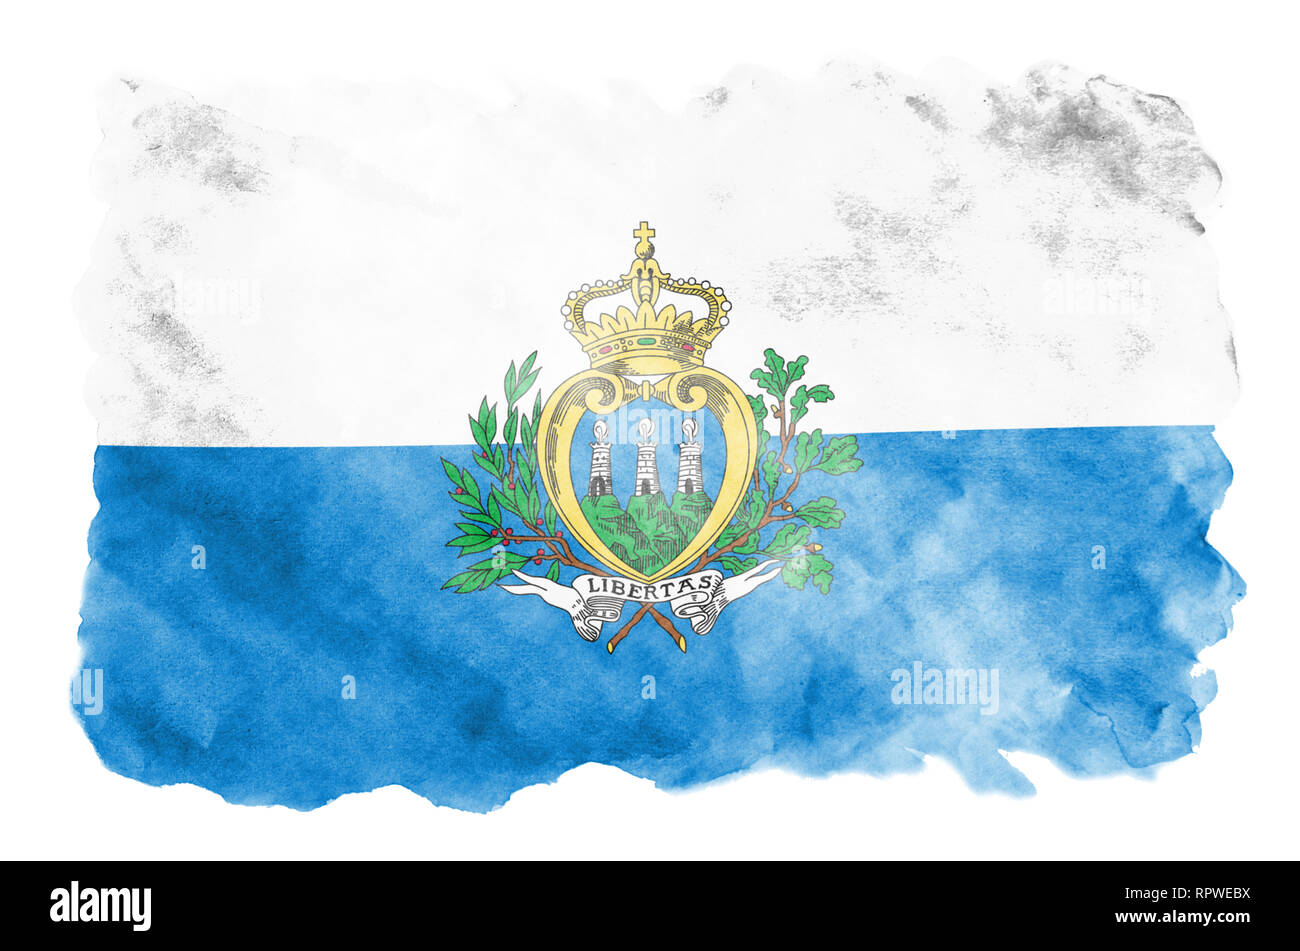 Saint-marin drapeau est représenté dans un style aquarelle liquide isolé sur fond blanc. Peinture imprudente avec ombrage image de drapeau national. L'indépendance Banque D'Images